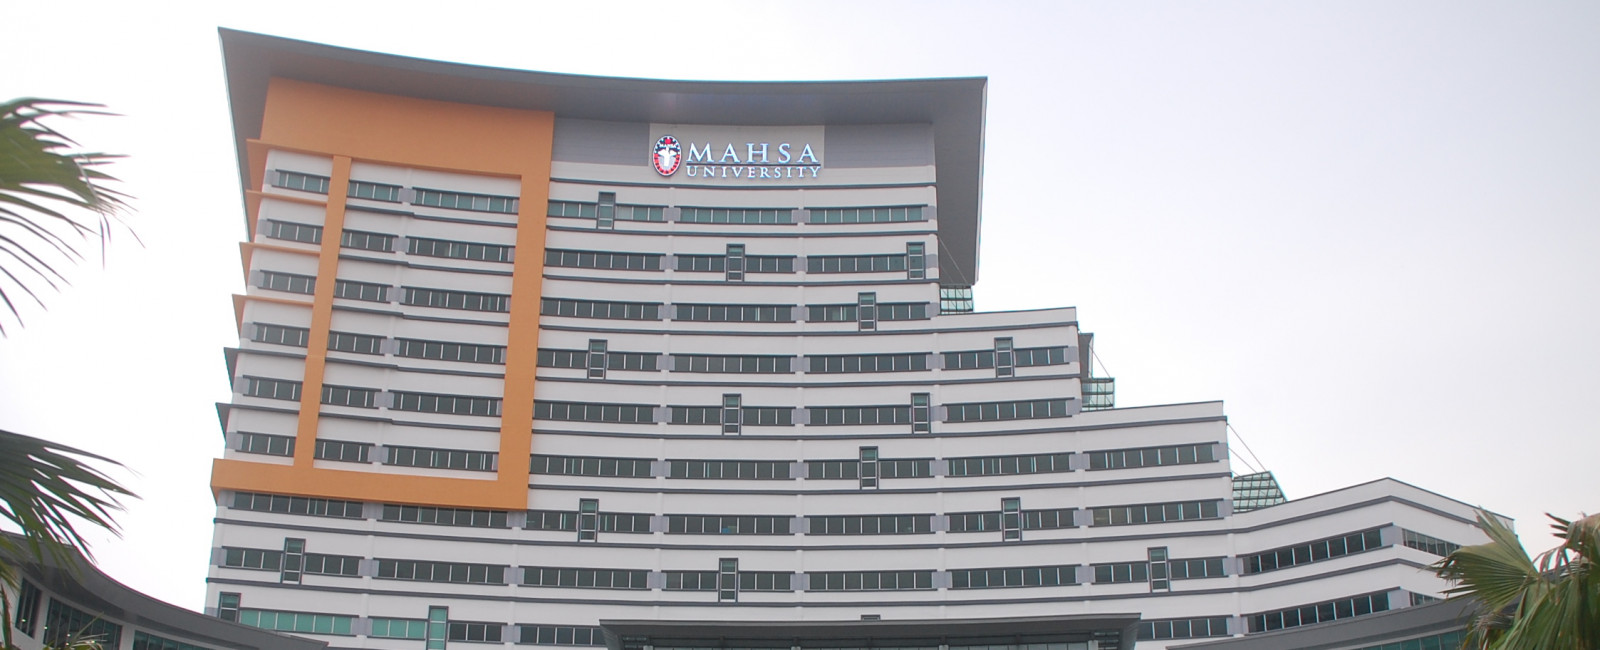 MAHSA University | MyCompass